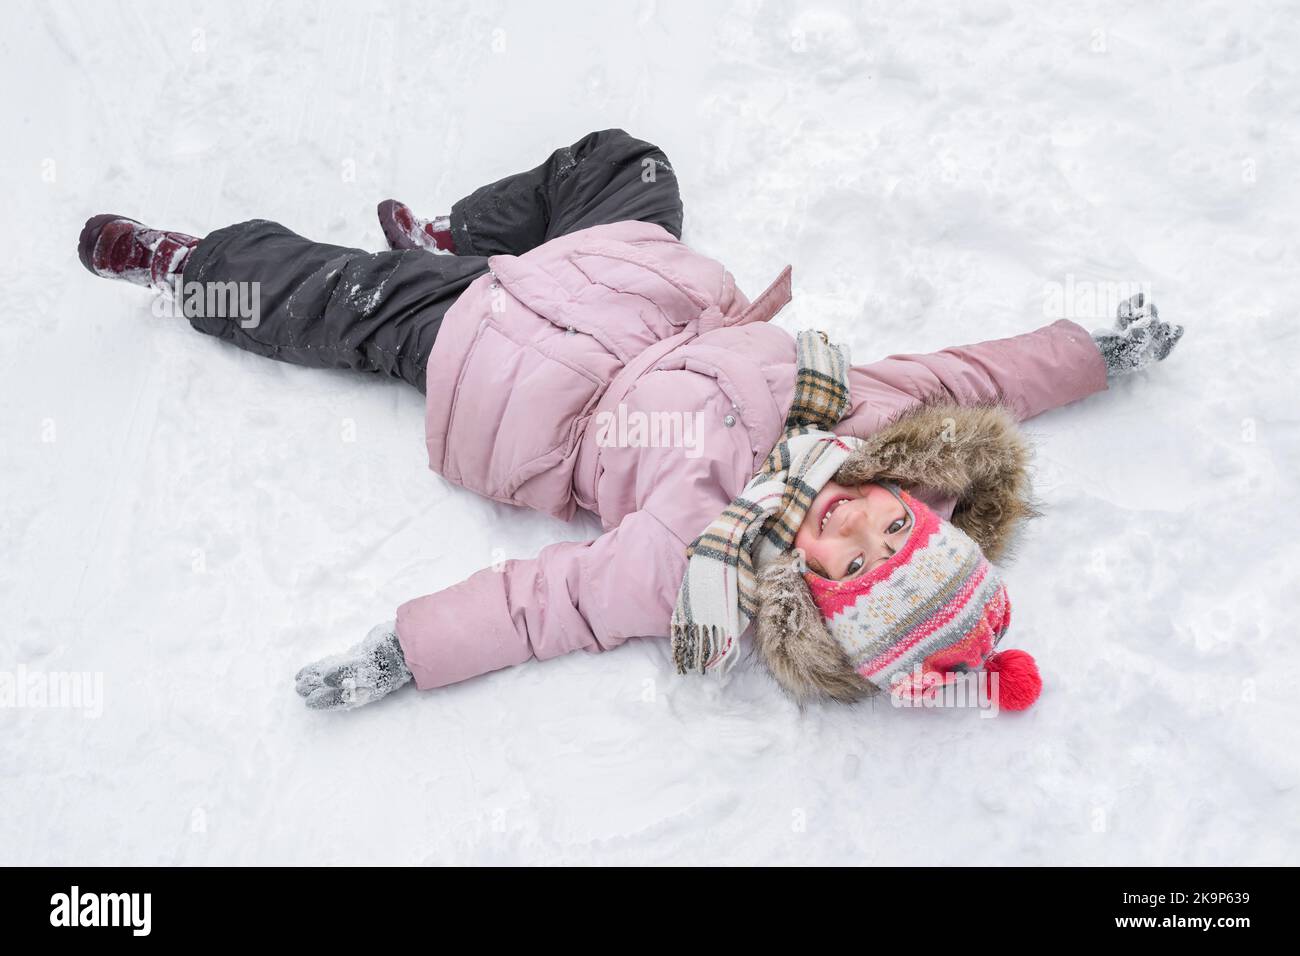 La bambina in inverno gioca sulla neve. La vacanza invernale Foto Stock